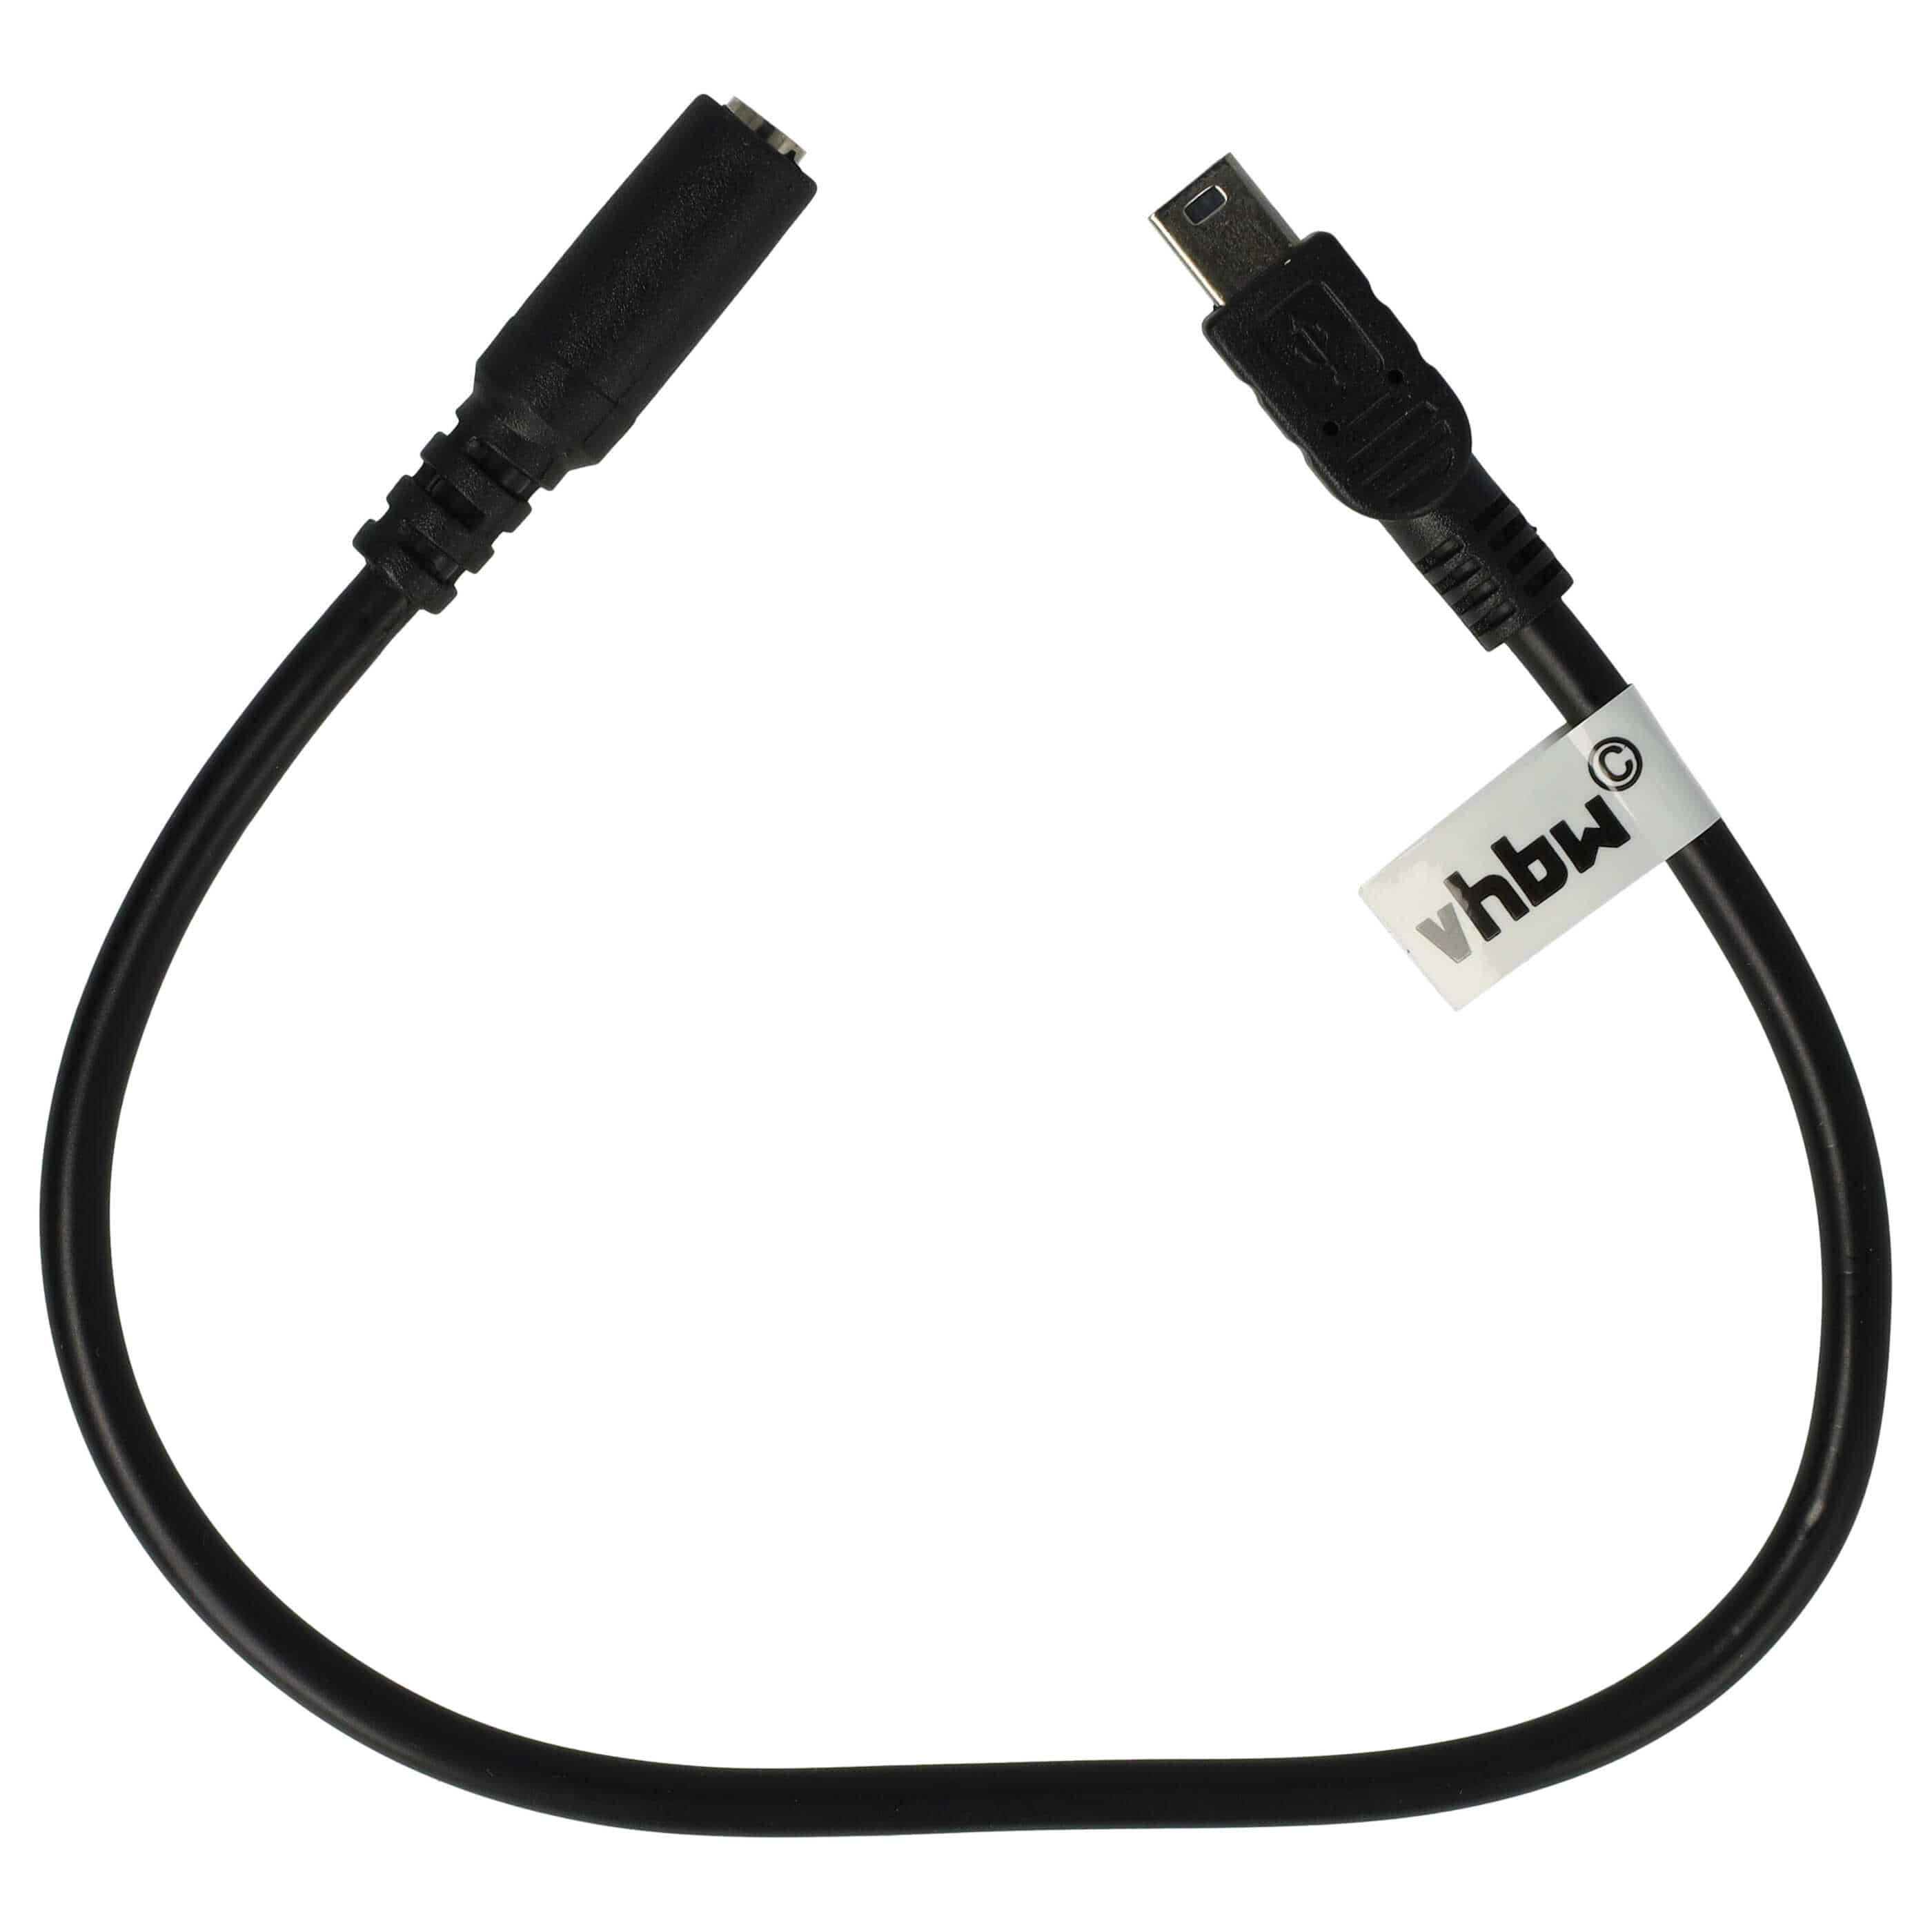 Cable mini USB a jack para cámaras de acción GoPro Hero, etc. - Cable adaptador